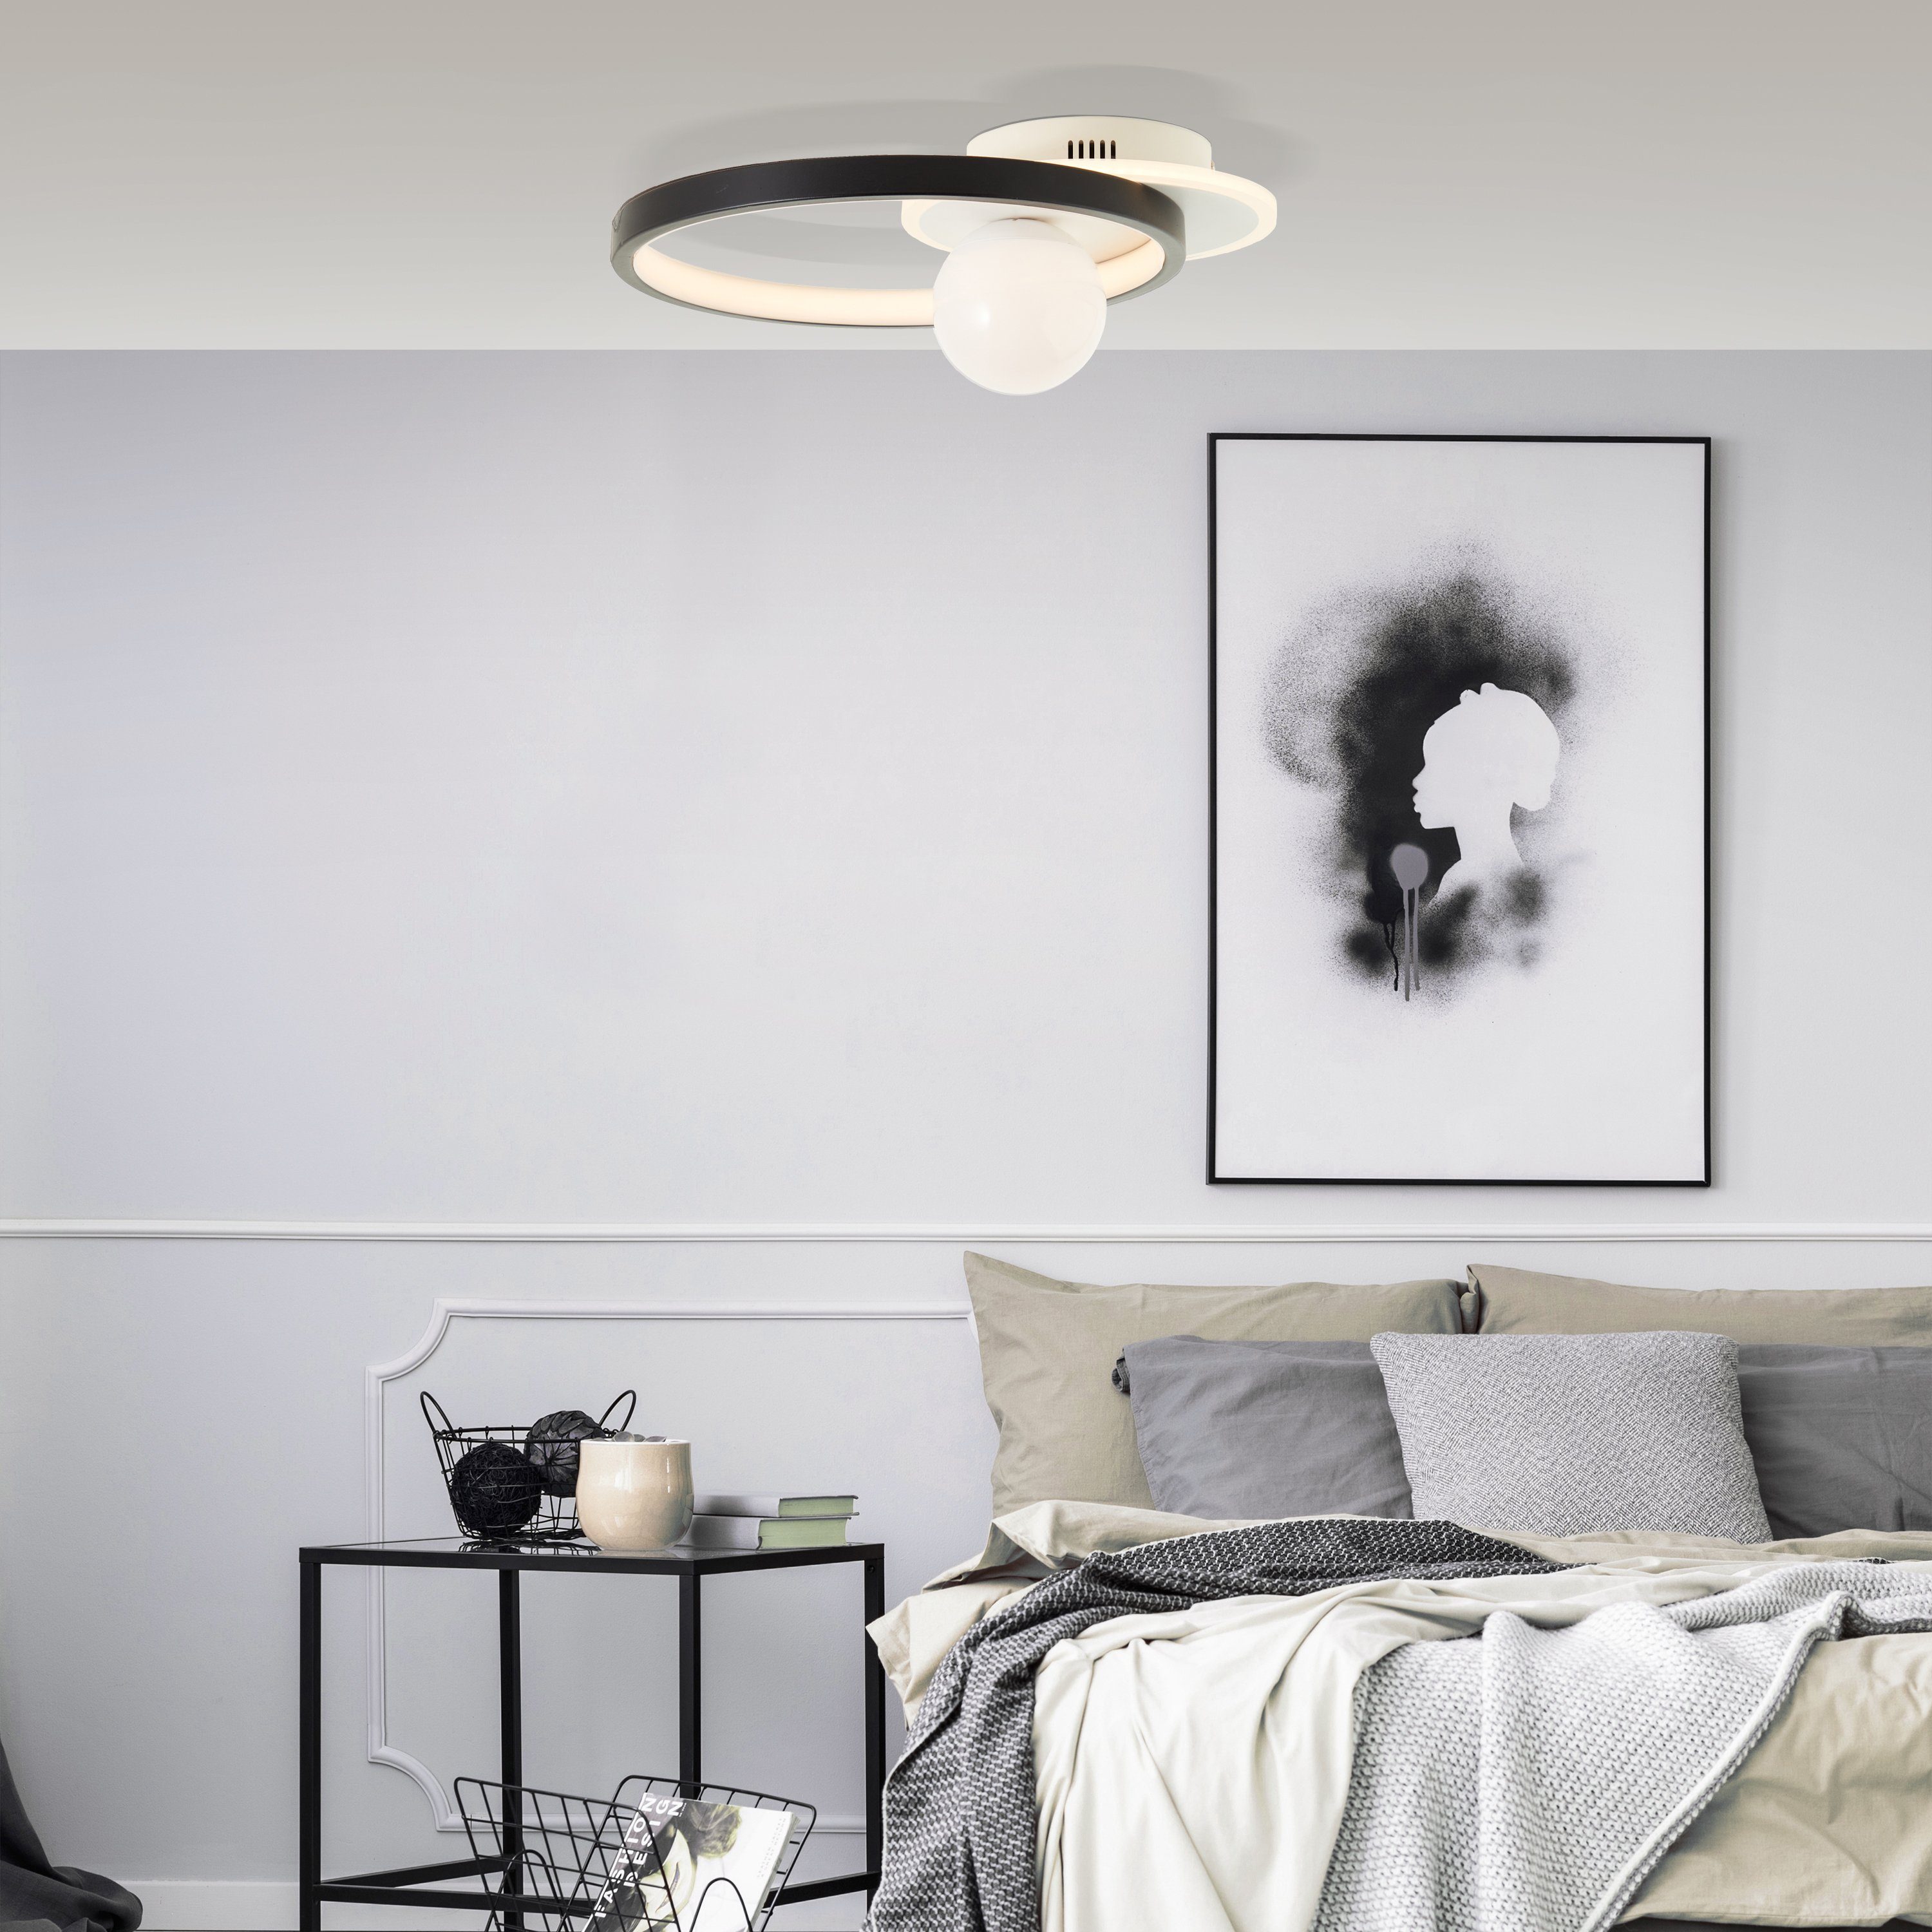 schwarz/weiß Brilliant Deckenleuchte Atlanta, LED LED 30x35cm wechselbar, Deckenlampe Warmweiß,